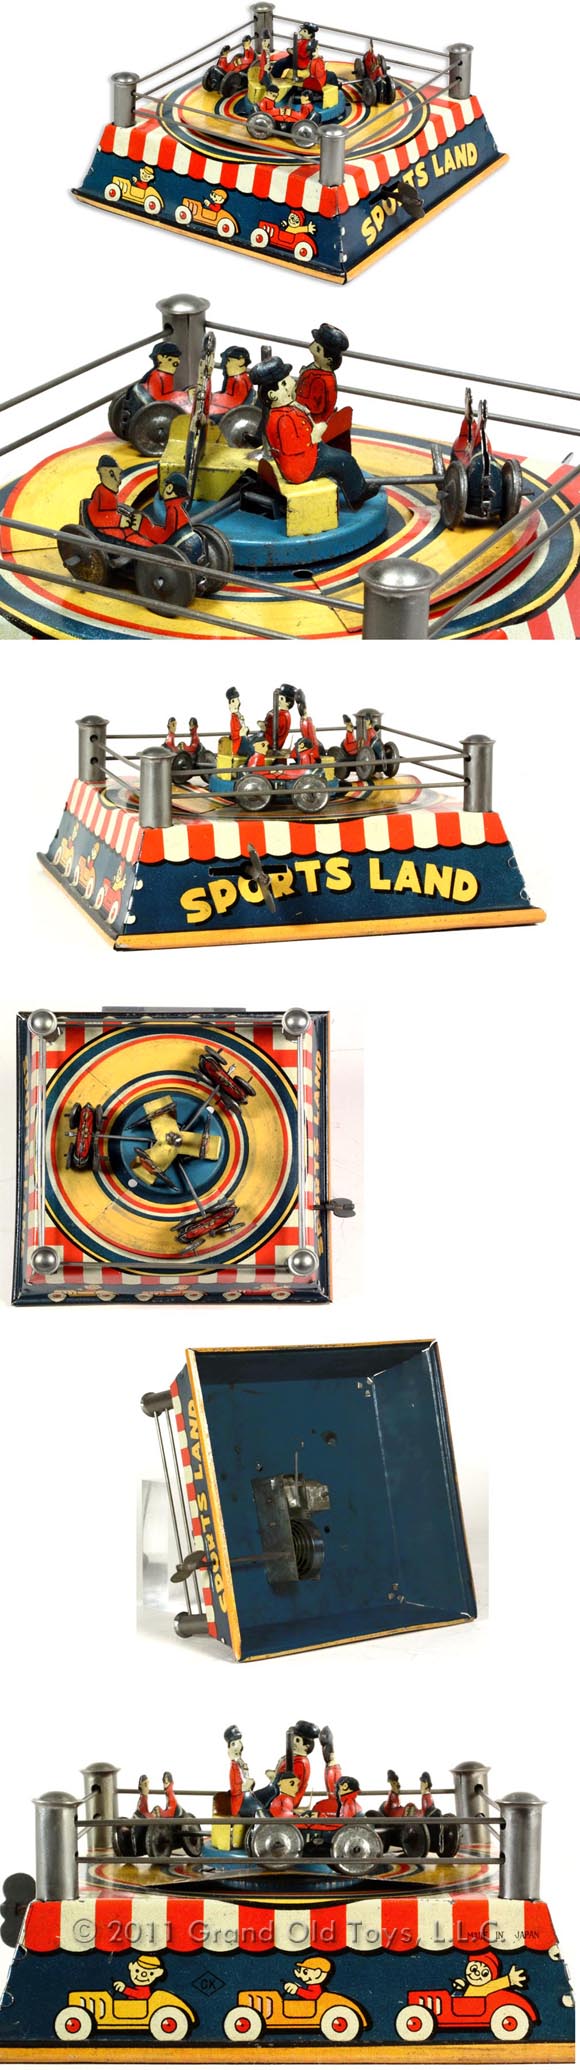 c.1928 Kuramochi Sports Land Amusement Ride Toy